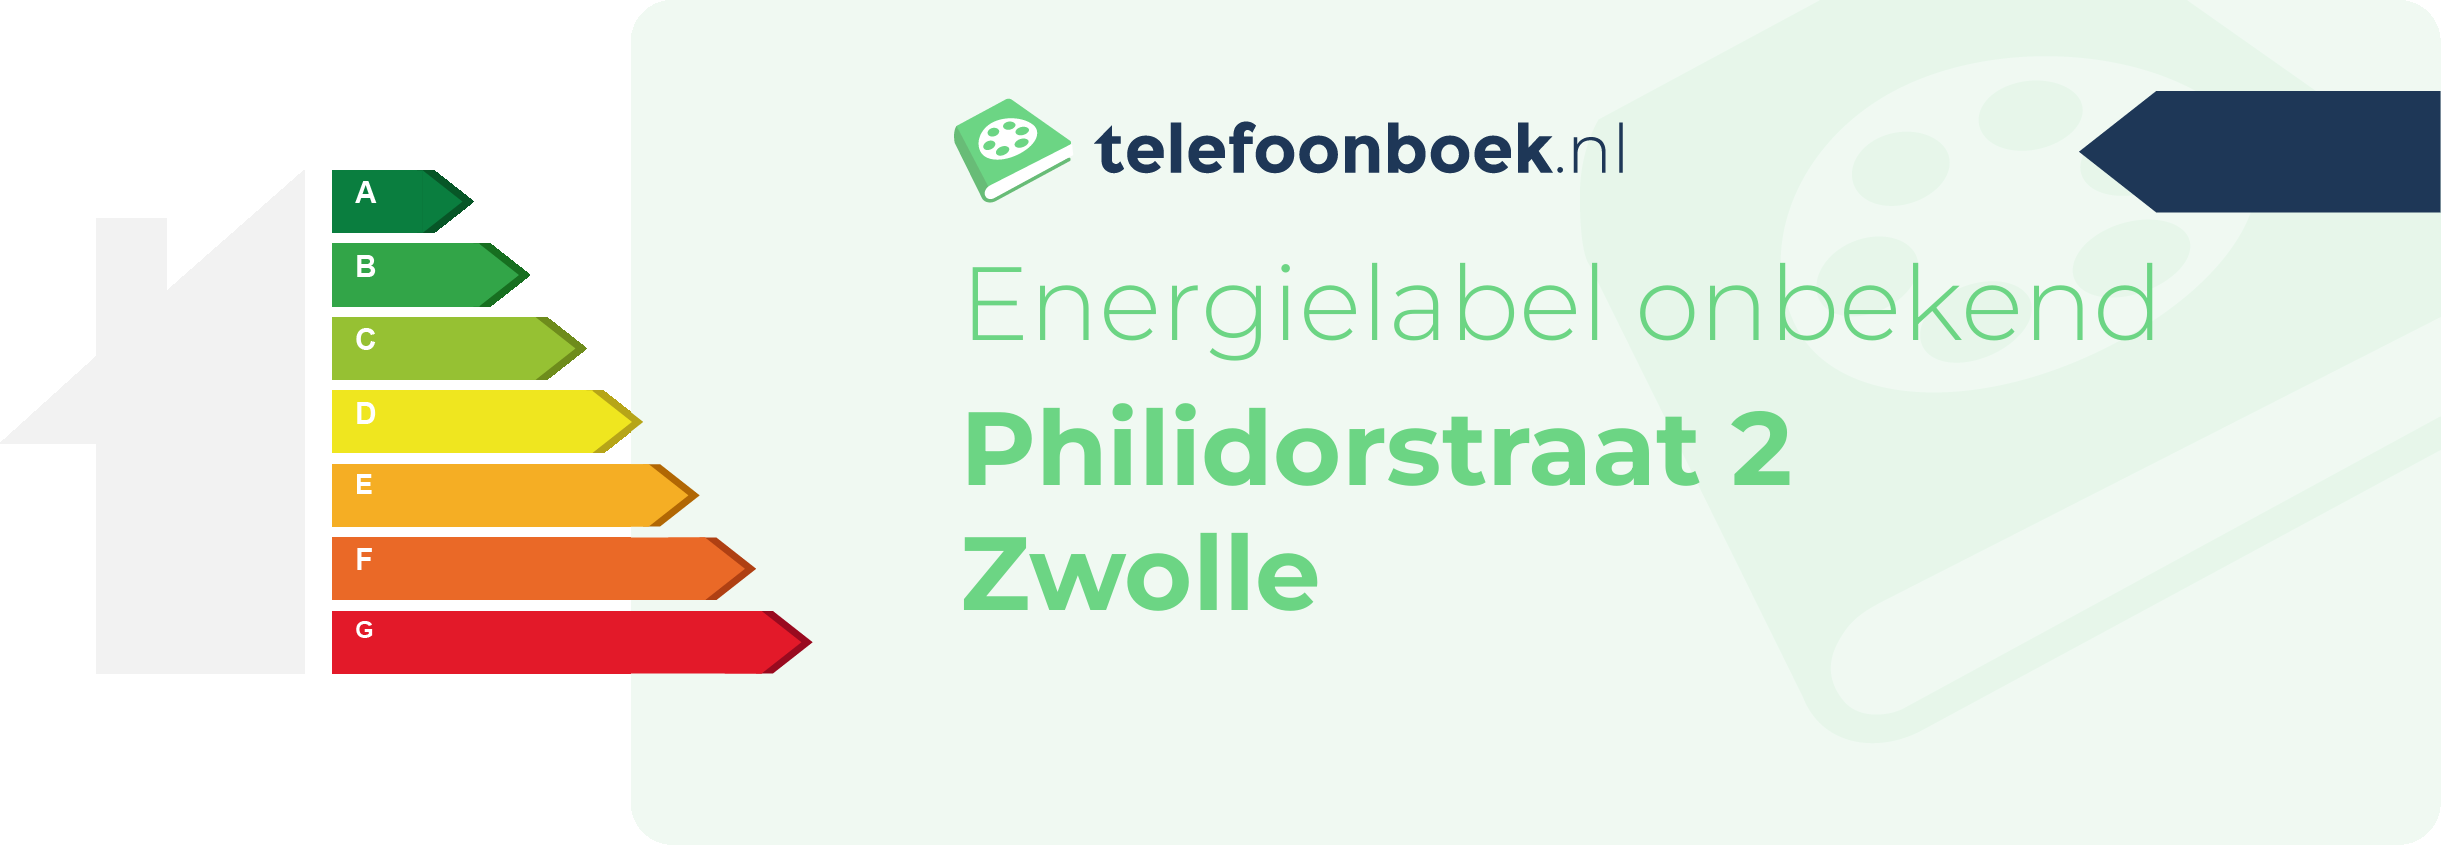 Energielabel Philidorstraat 2 Zwolle